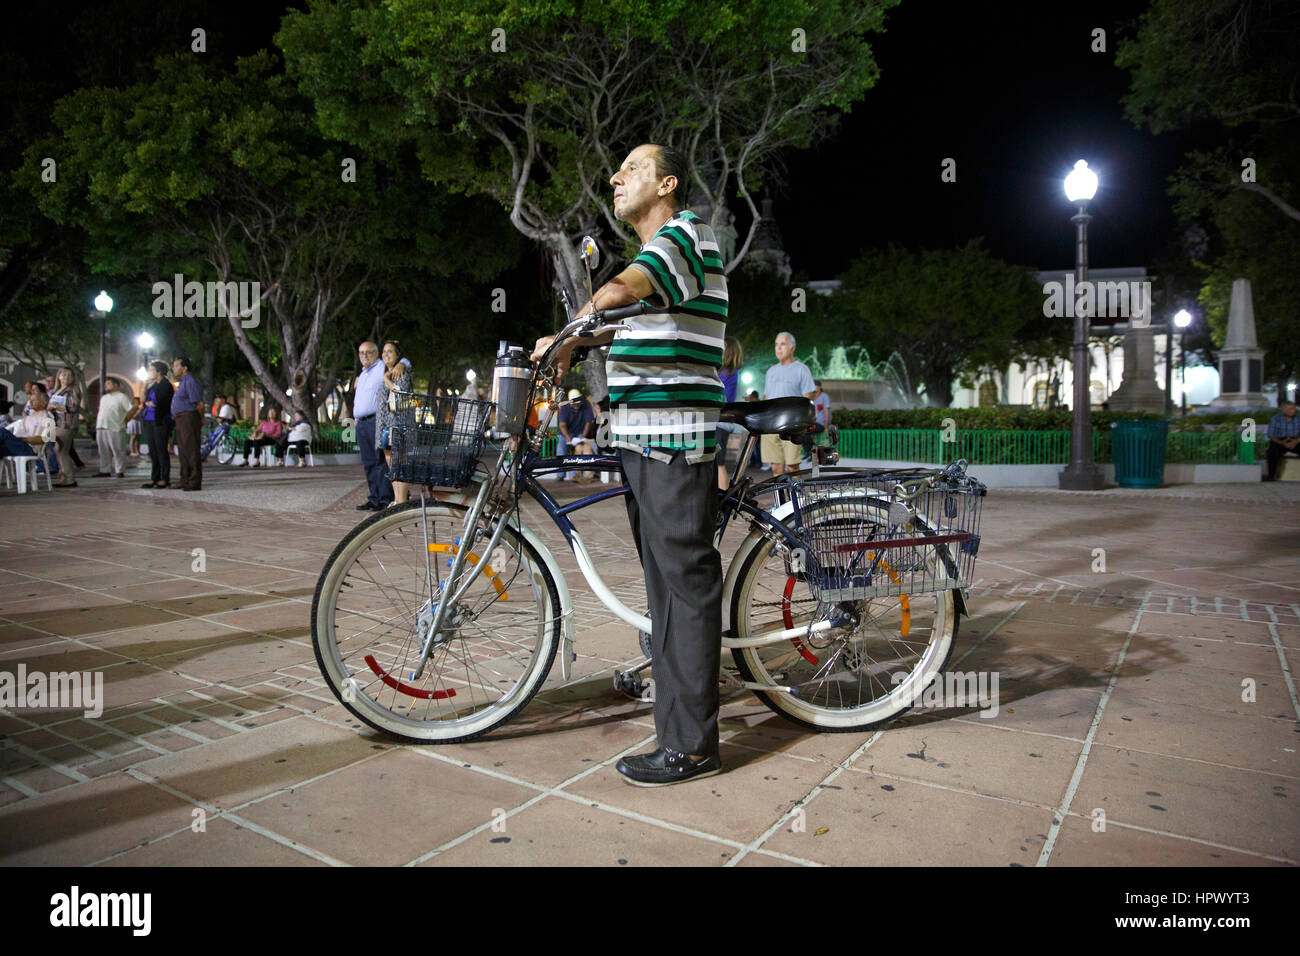 Uomo con una bicicletta in Plaza Degetau, city park Street scene, Ponce, Puerto Rico Foto Stock